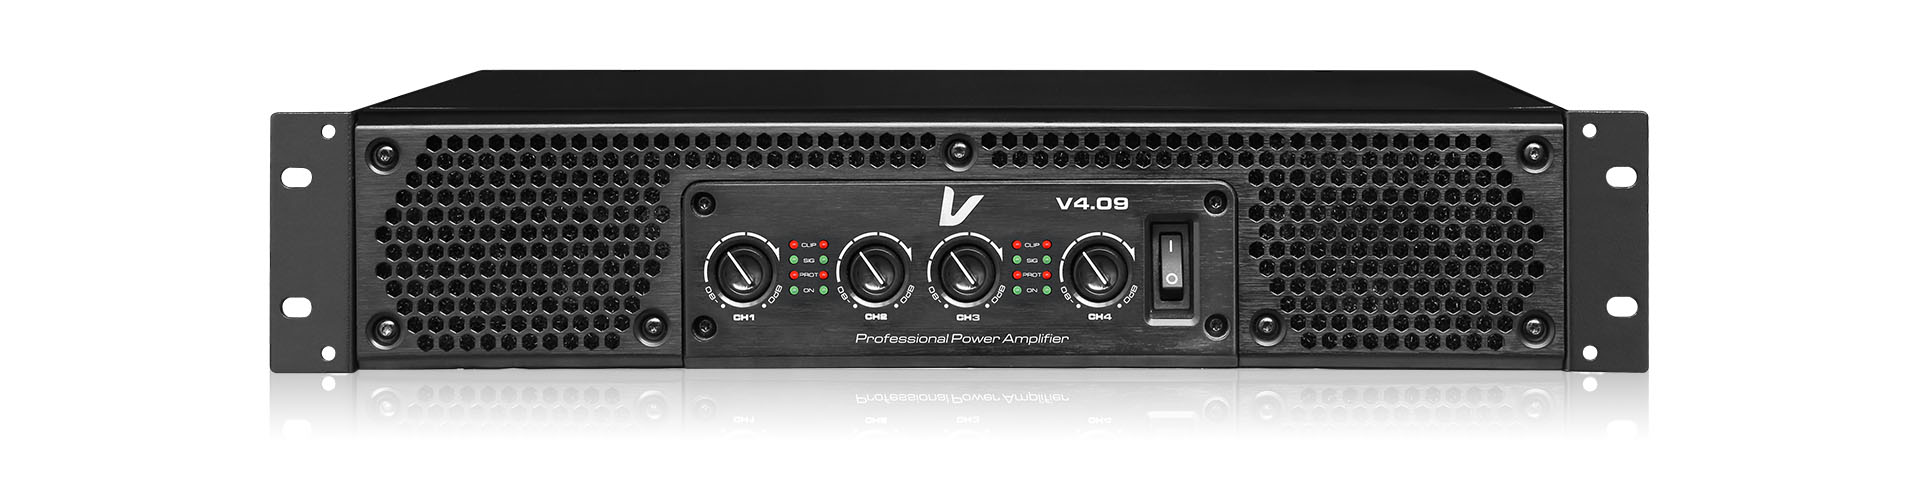 Bộ tăng âm điện Verity V4.35